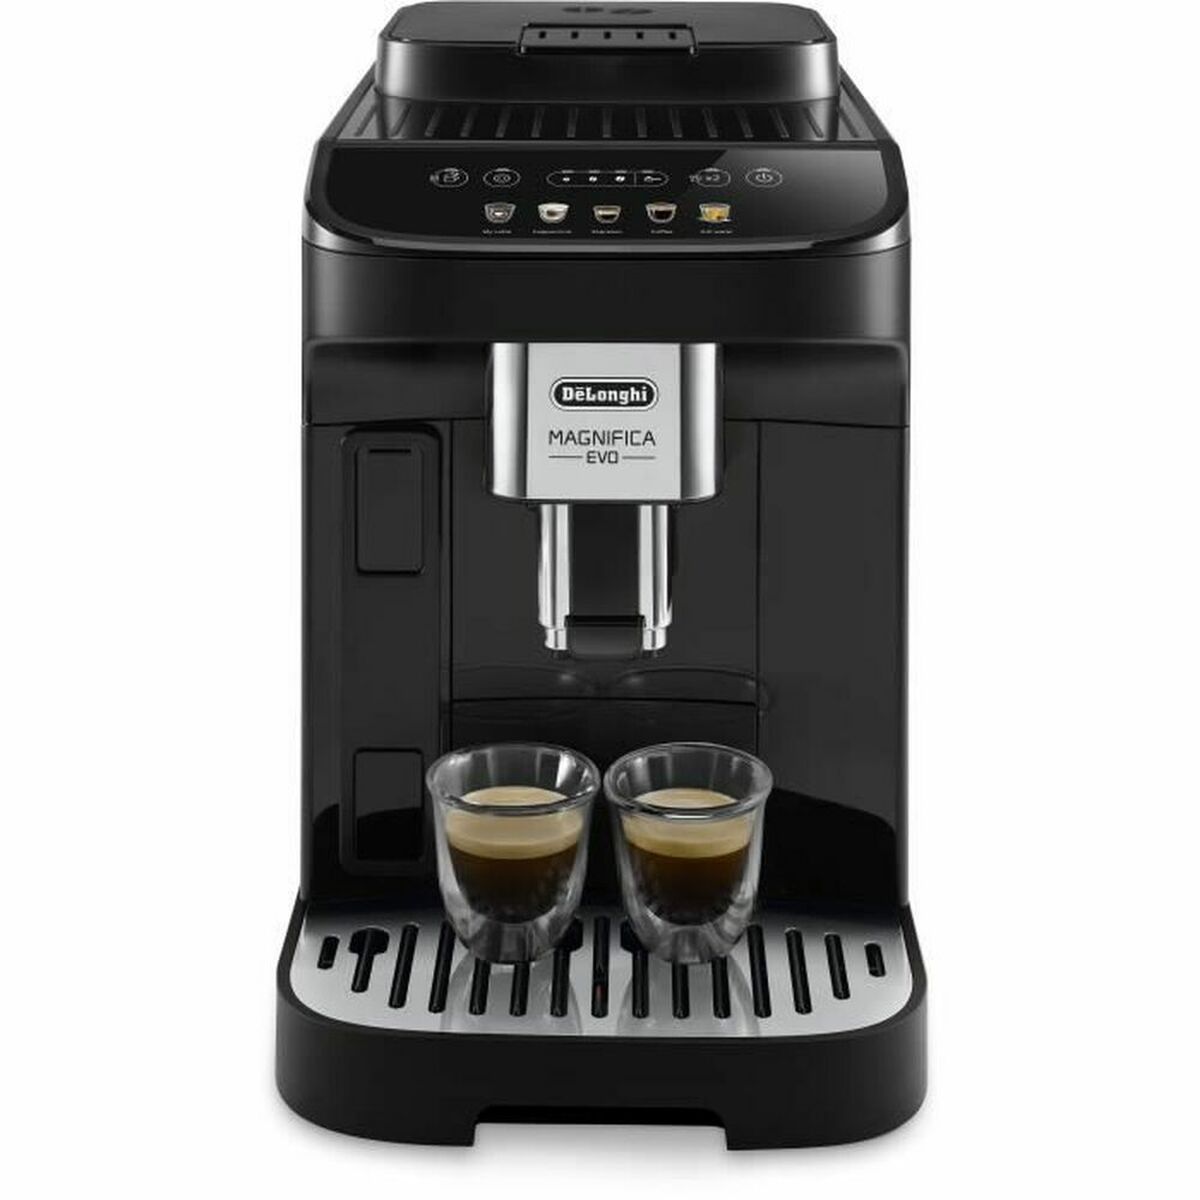 Delonghi Superautomatic Coffee Maker  Magnifica Evo 1,4 L Black Gbby2